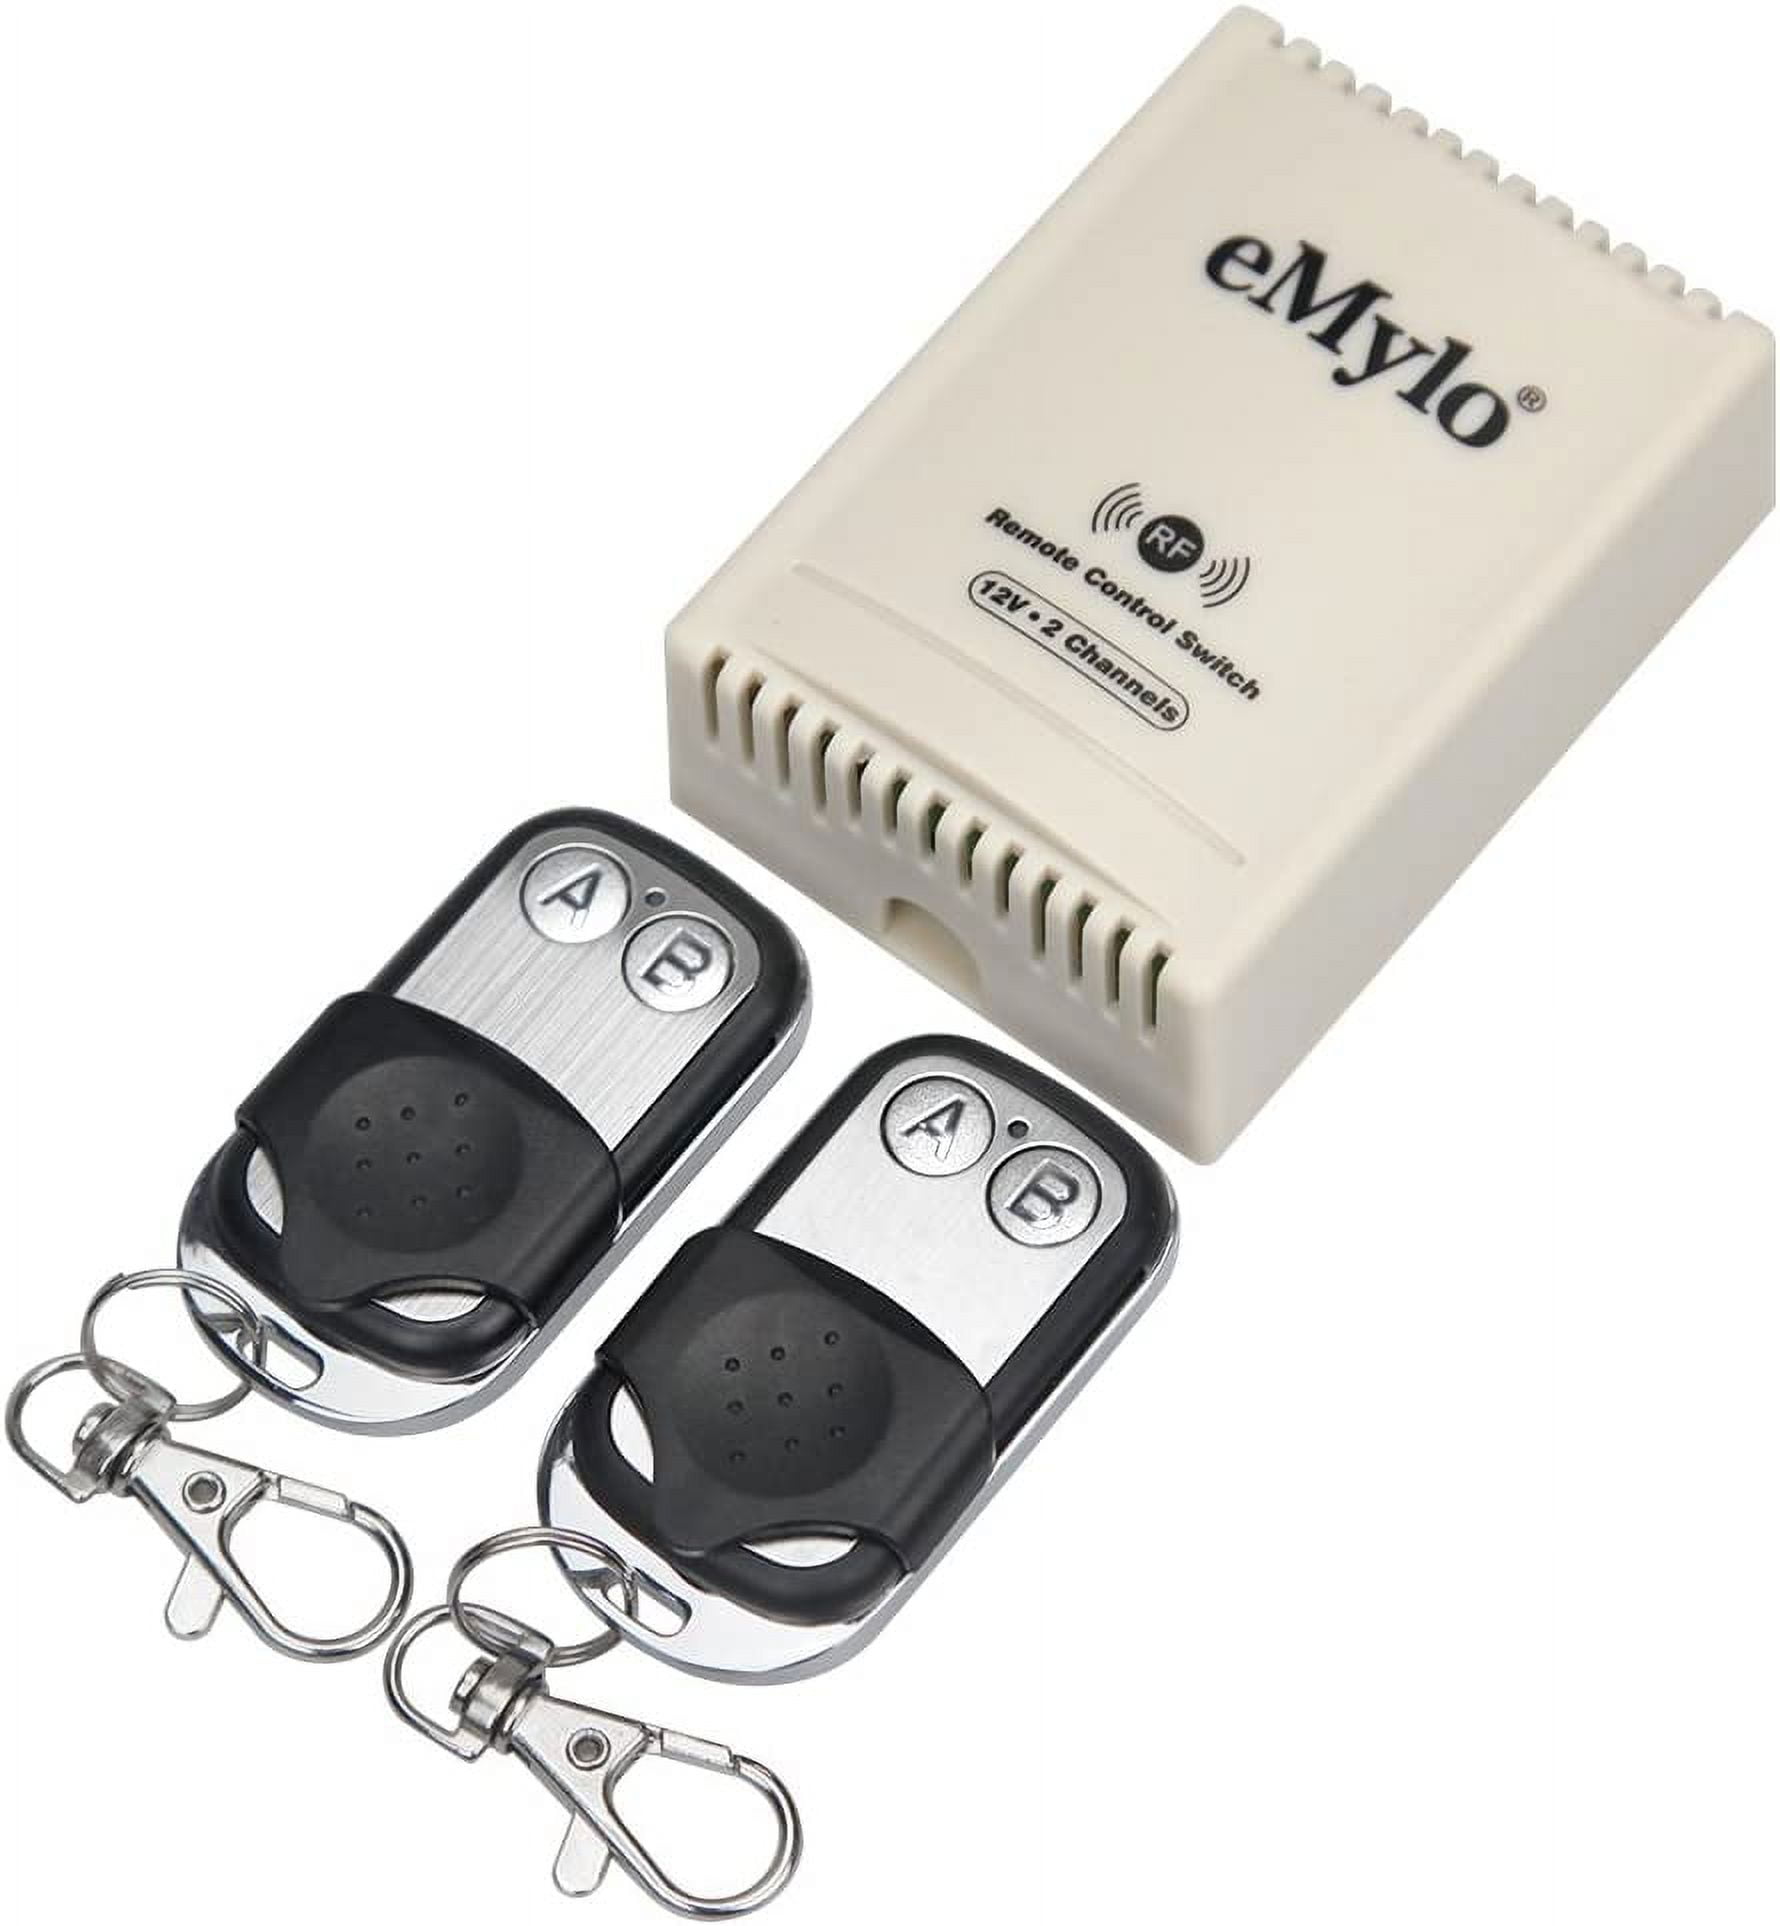 eMylo Mini Smart WiFi Relay Switch Wireless Remote Control Wifi